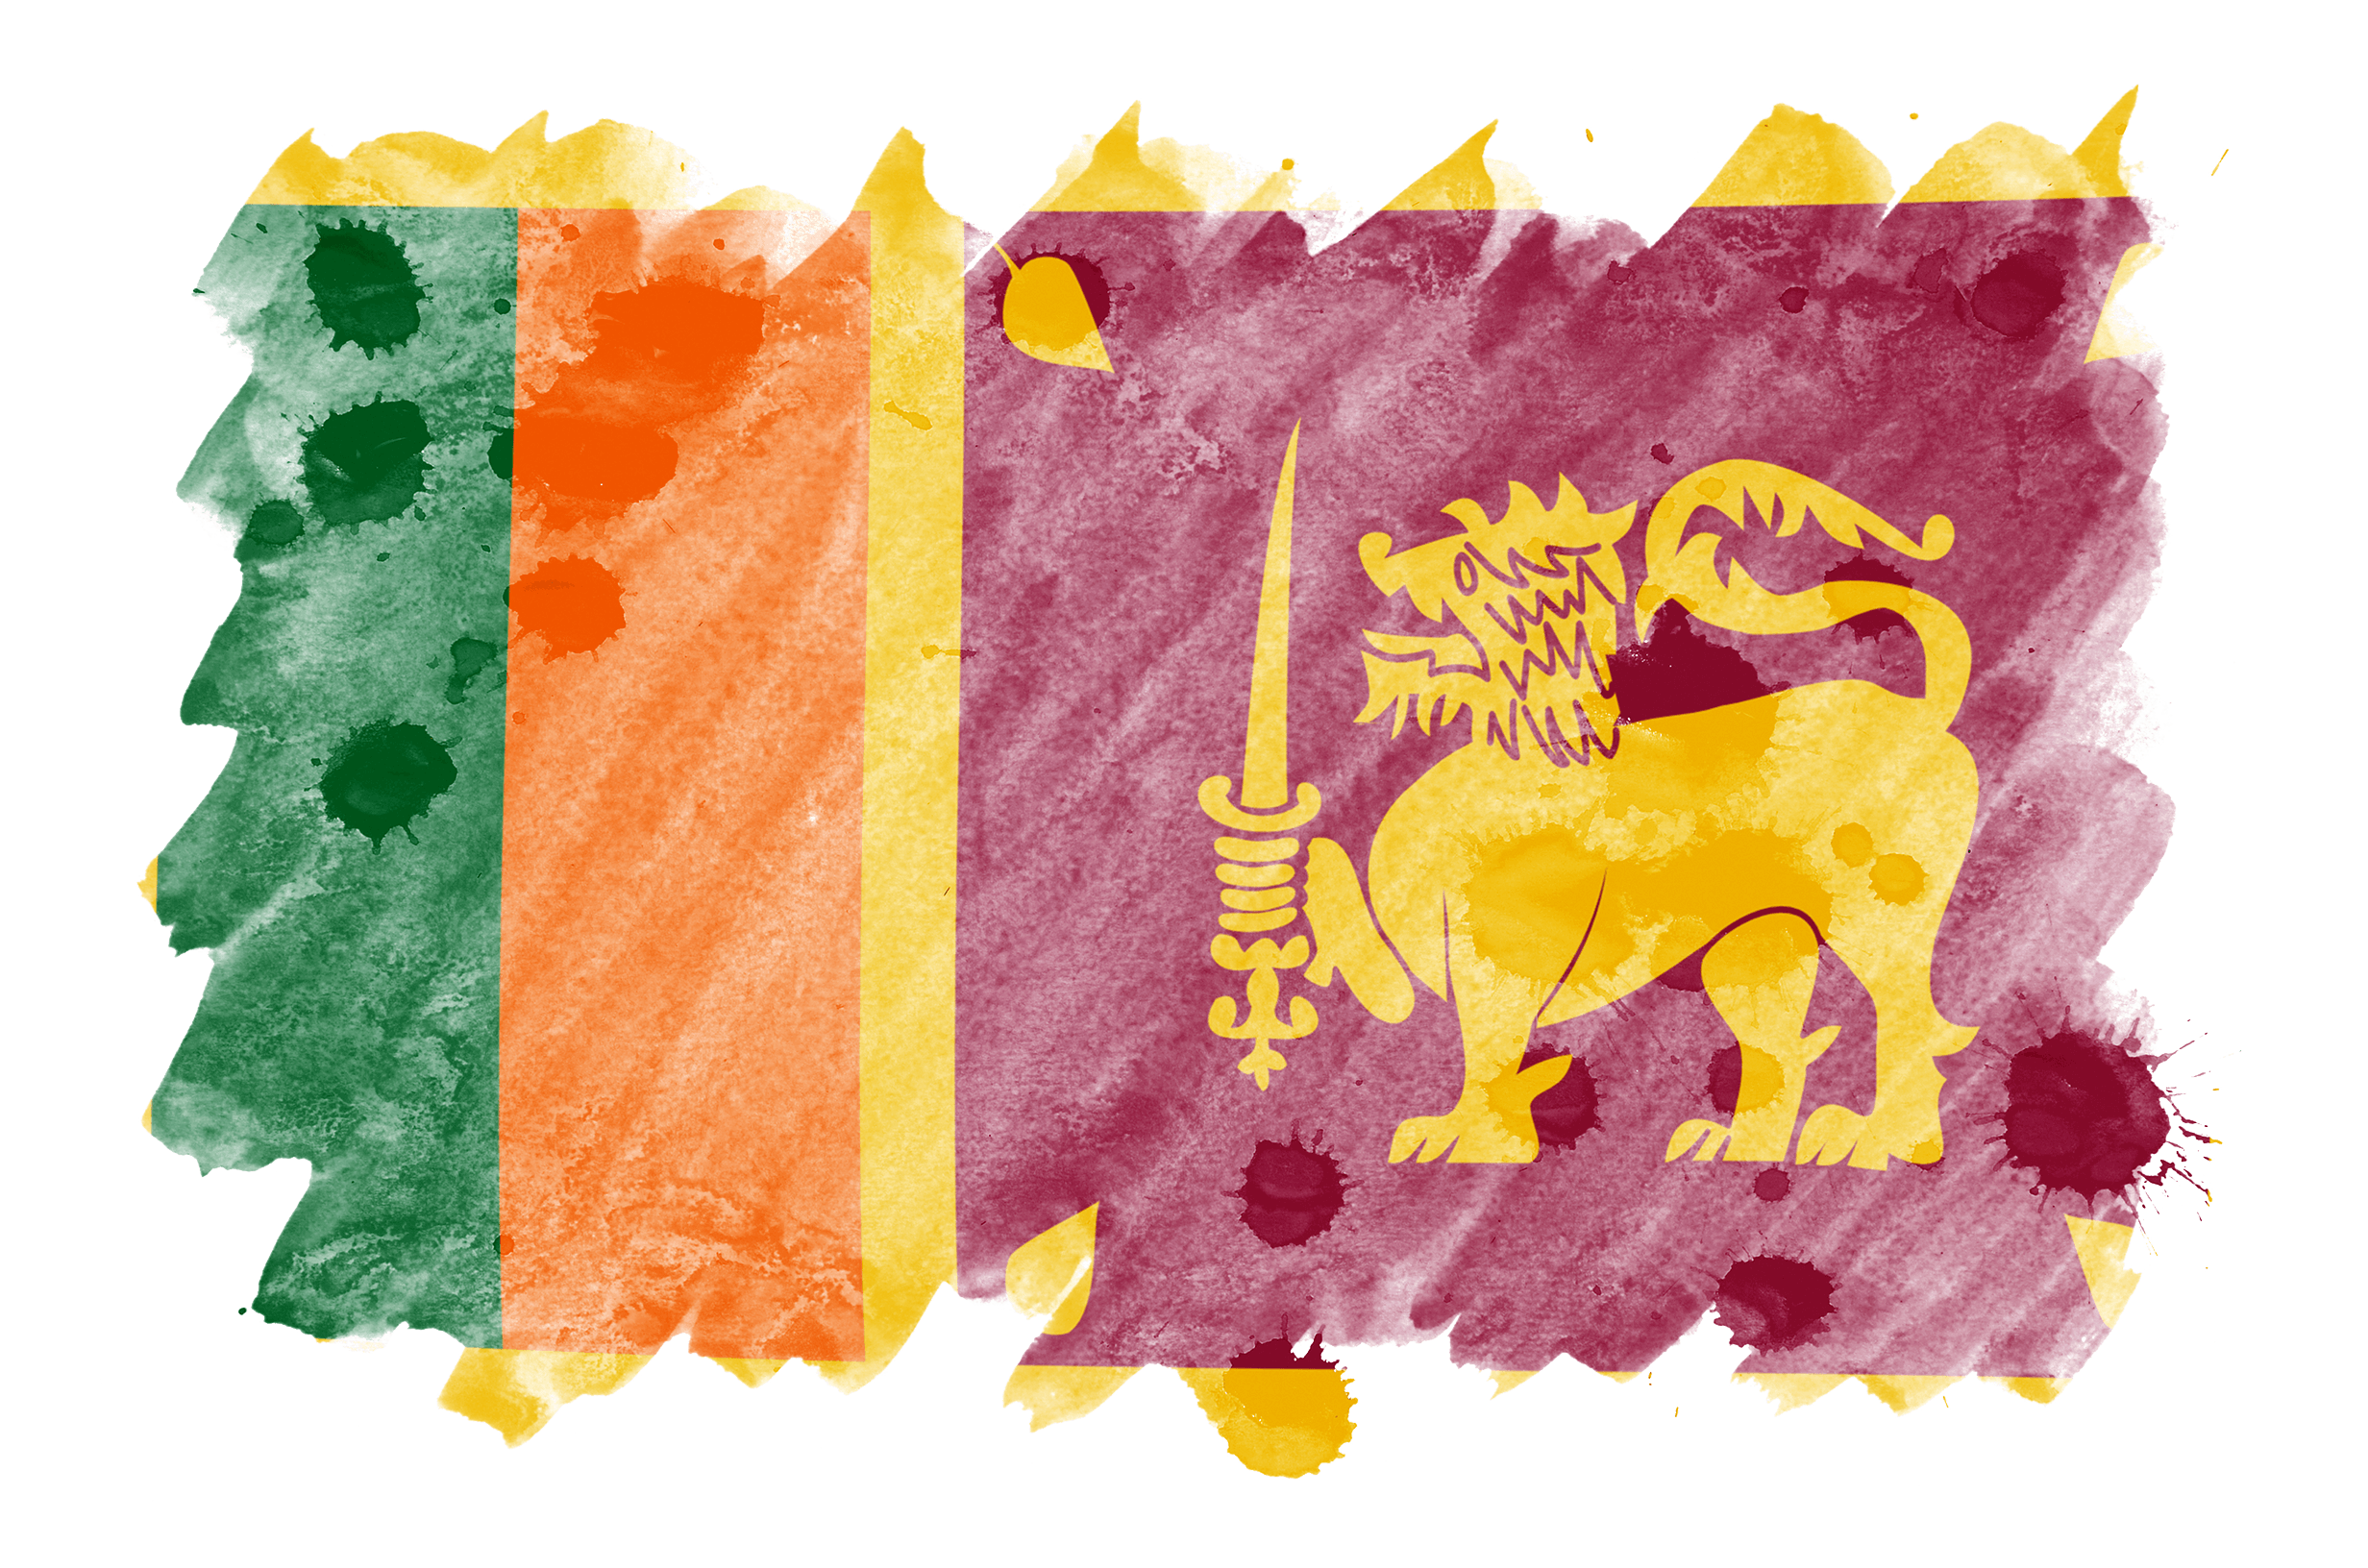 Die srilankische Flagge ist in flüssigem Aquarellstil dargestellt.